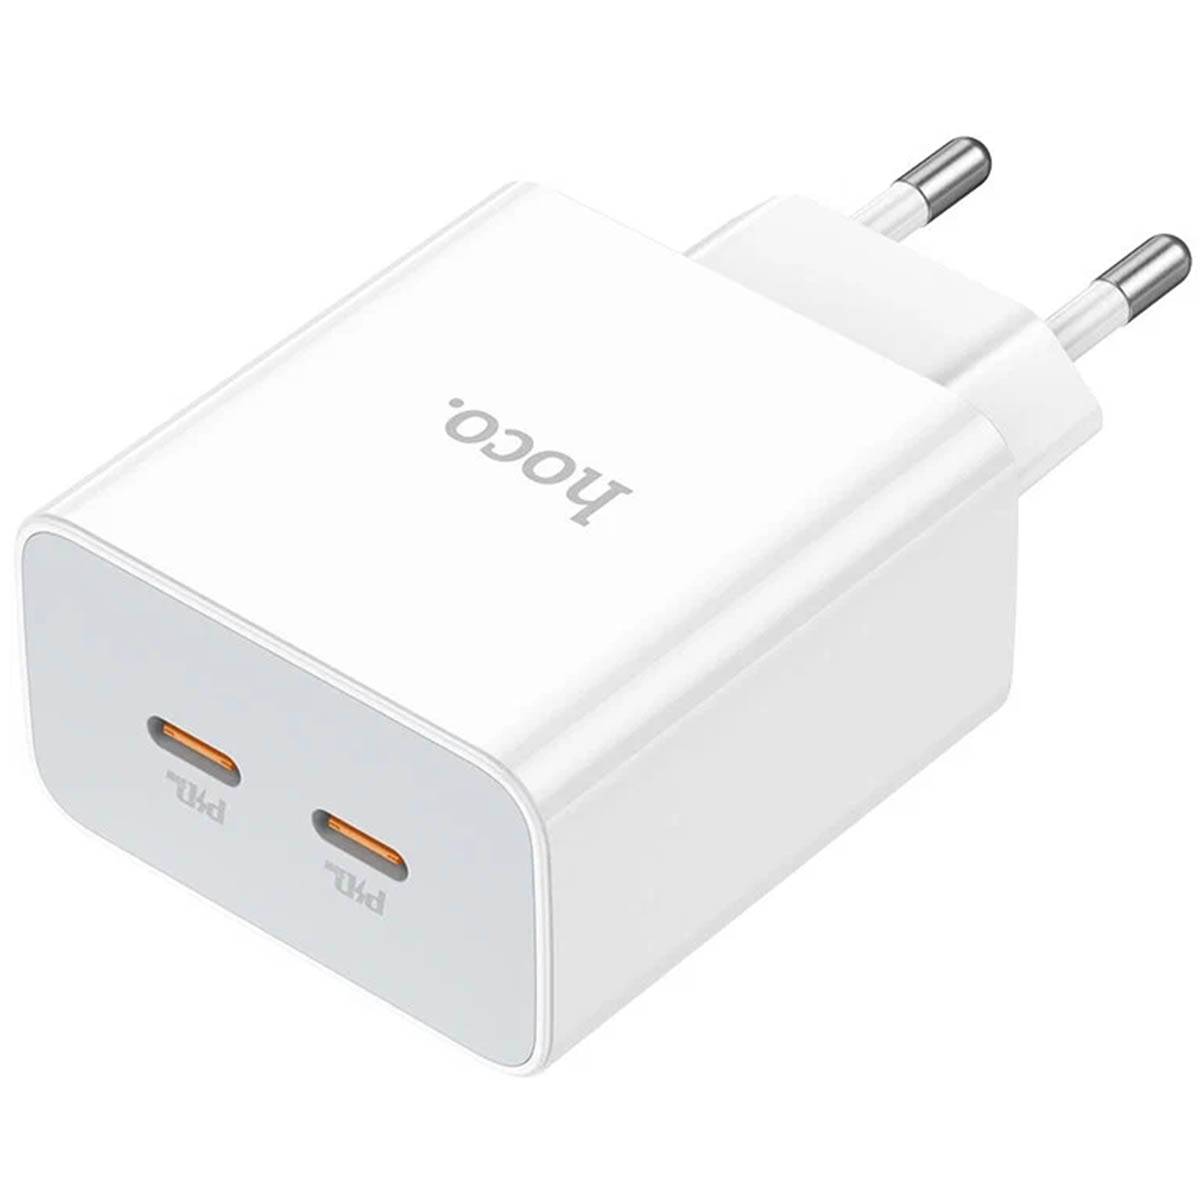 СЗУ (Сетевое зарядное устройство) HOCO C108A Leader, 35W, 2 USB Type C, QC3.0, цвет белый